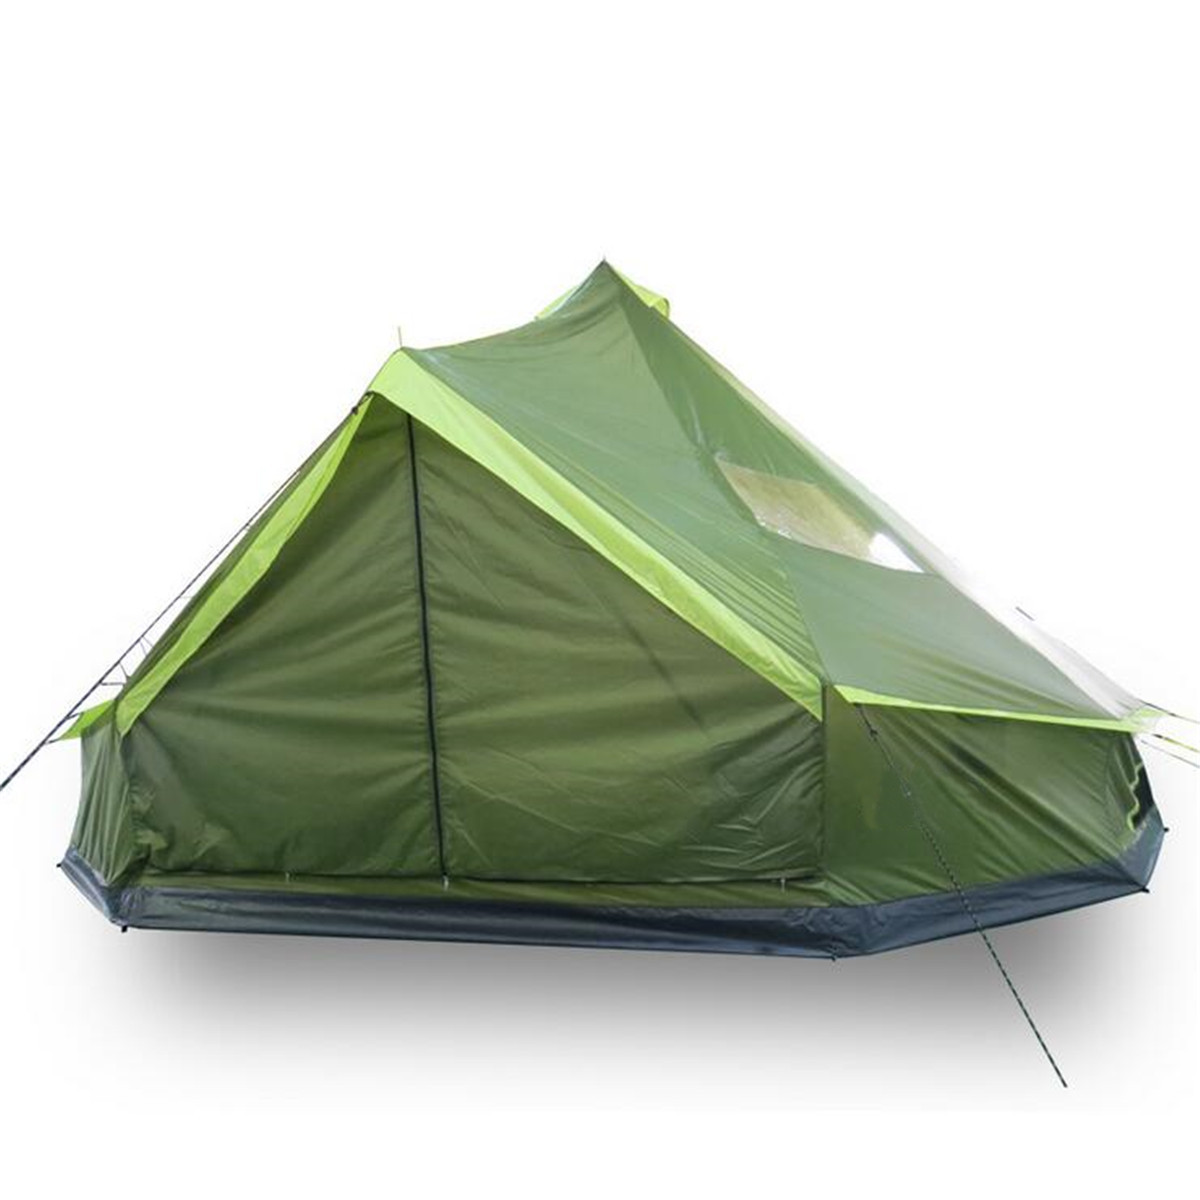 

500x500x300см 8 человек палатка для семьи Кемпинг Водонепроницаемы ветрозащитный Кемпинг семейная палатка